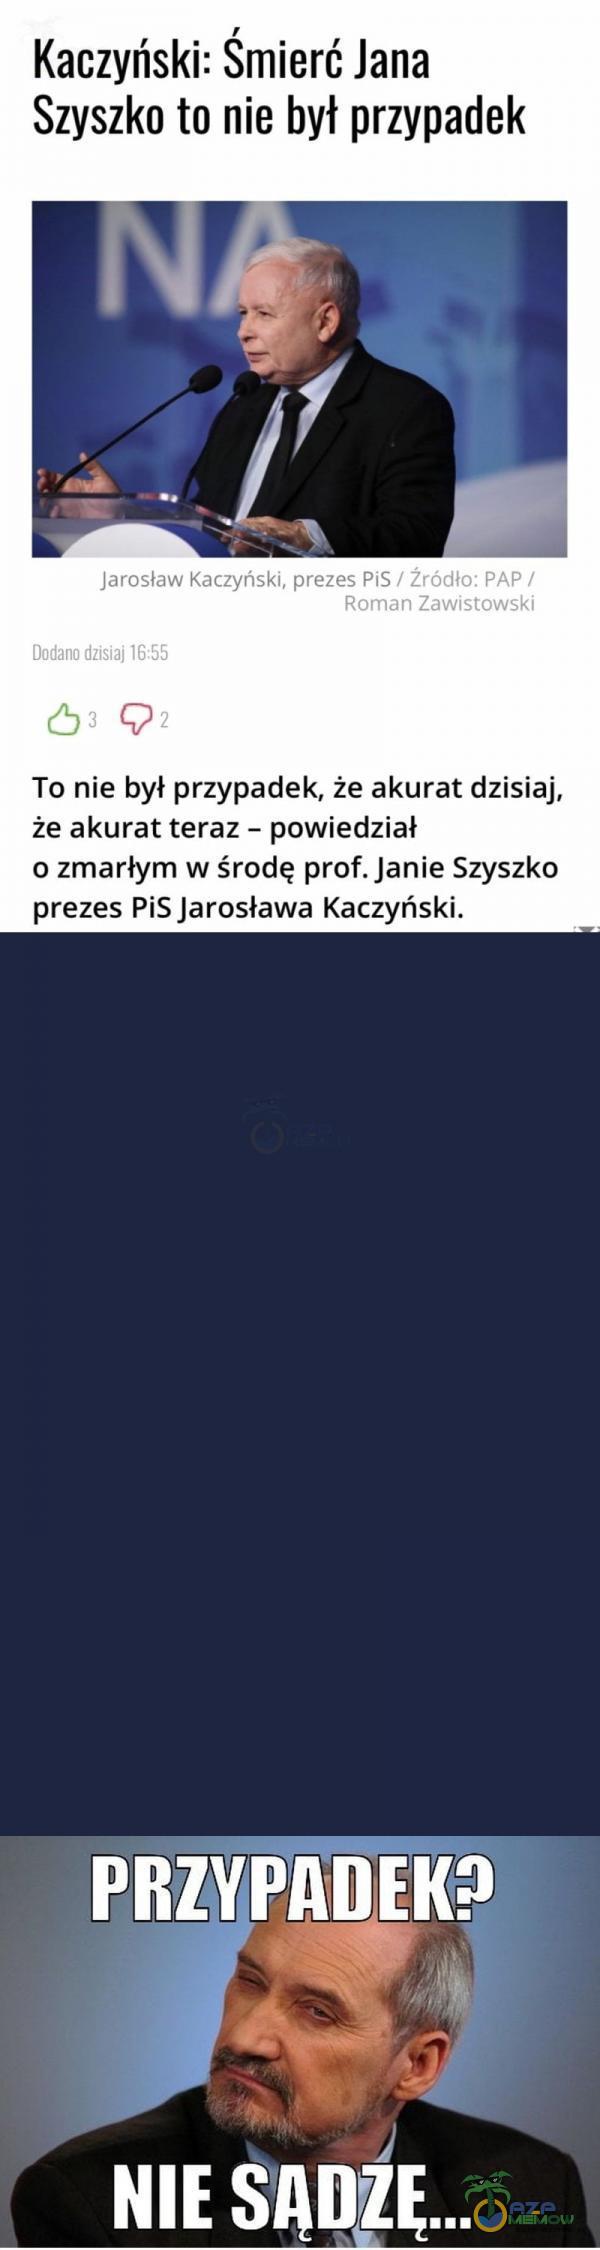   Kaczyński: Smierć Jana Szyszko to nie był przypadek Jarosław Kaczyński, prezes PiS / Zródło: PAP / Roman Zawistowski Dodano dzisiaj 16:55 03 To nie był przypadek, że akurat dzisiaj, że akurat teraz - powiedział o zmarłym w środę prof....